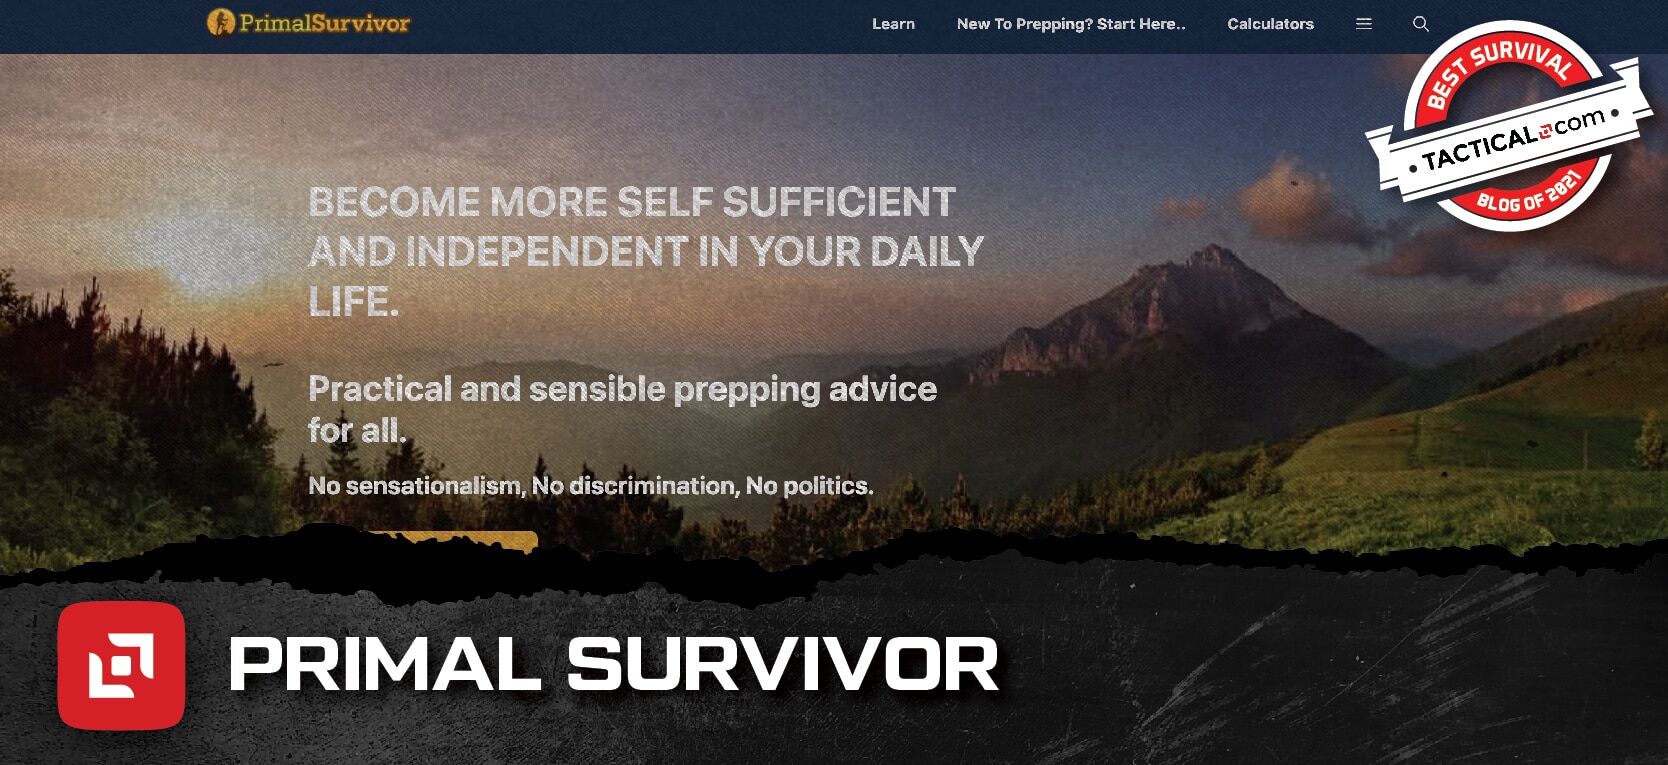 Primal Survivor homepage